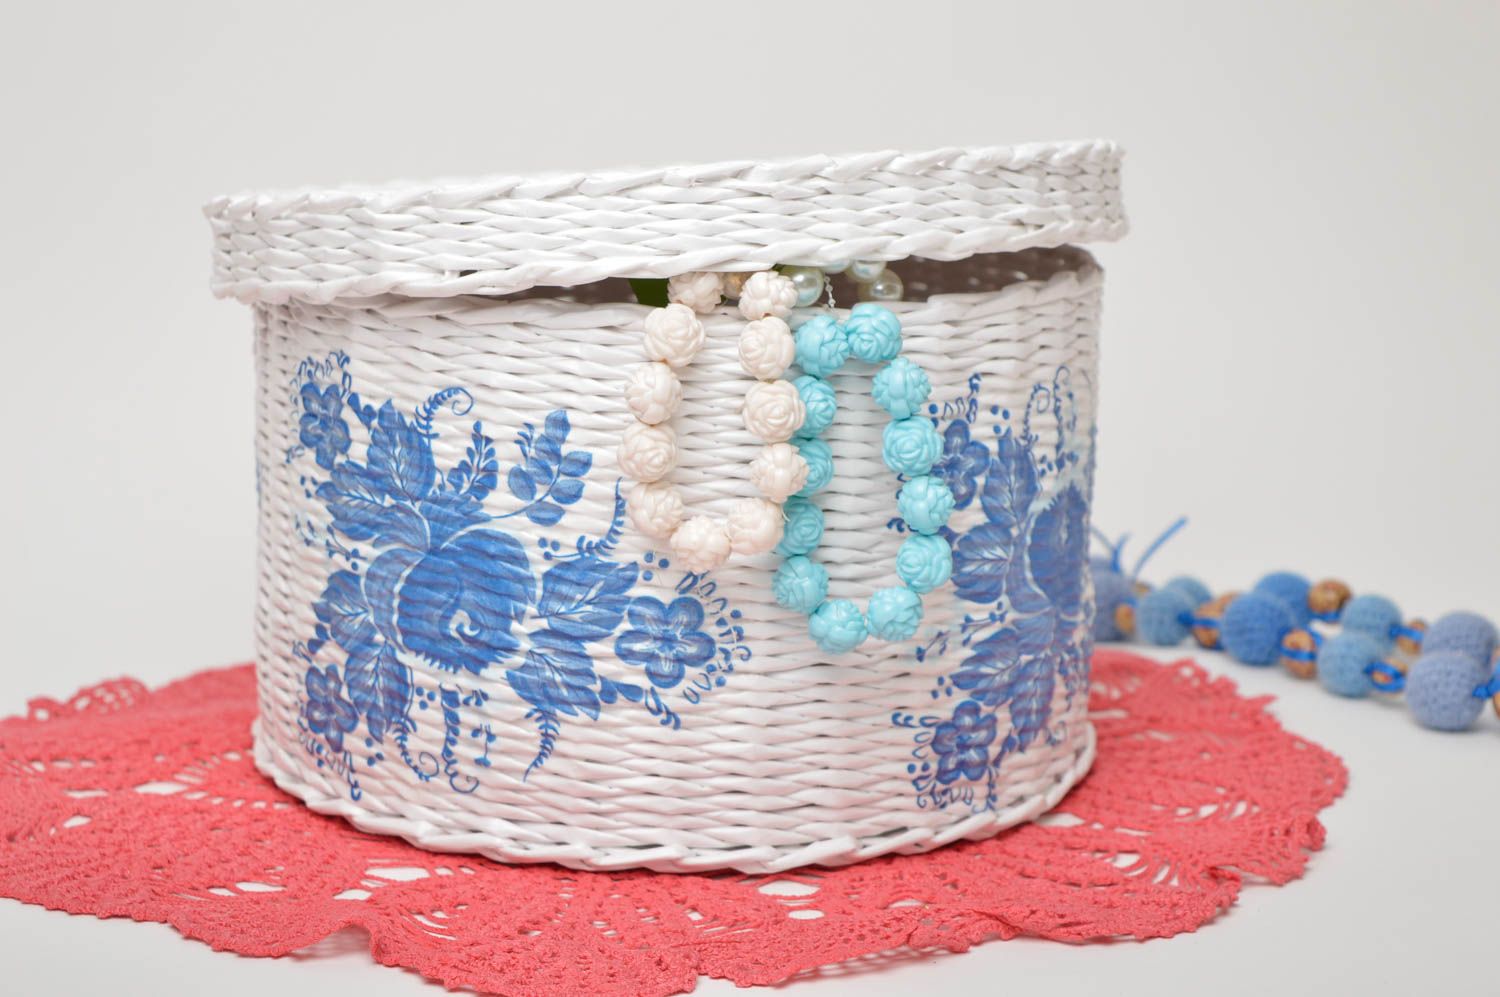 Homemade home decor woven basket small basket souvenir ideas gifts for women photo 1